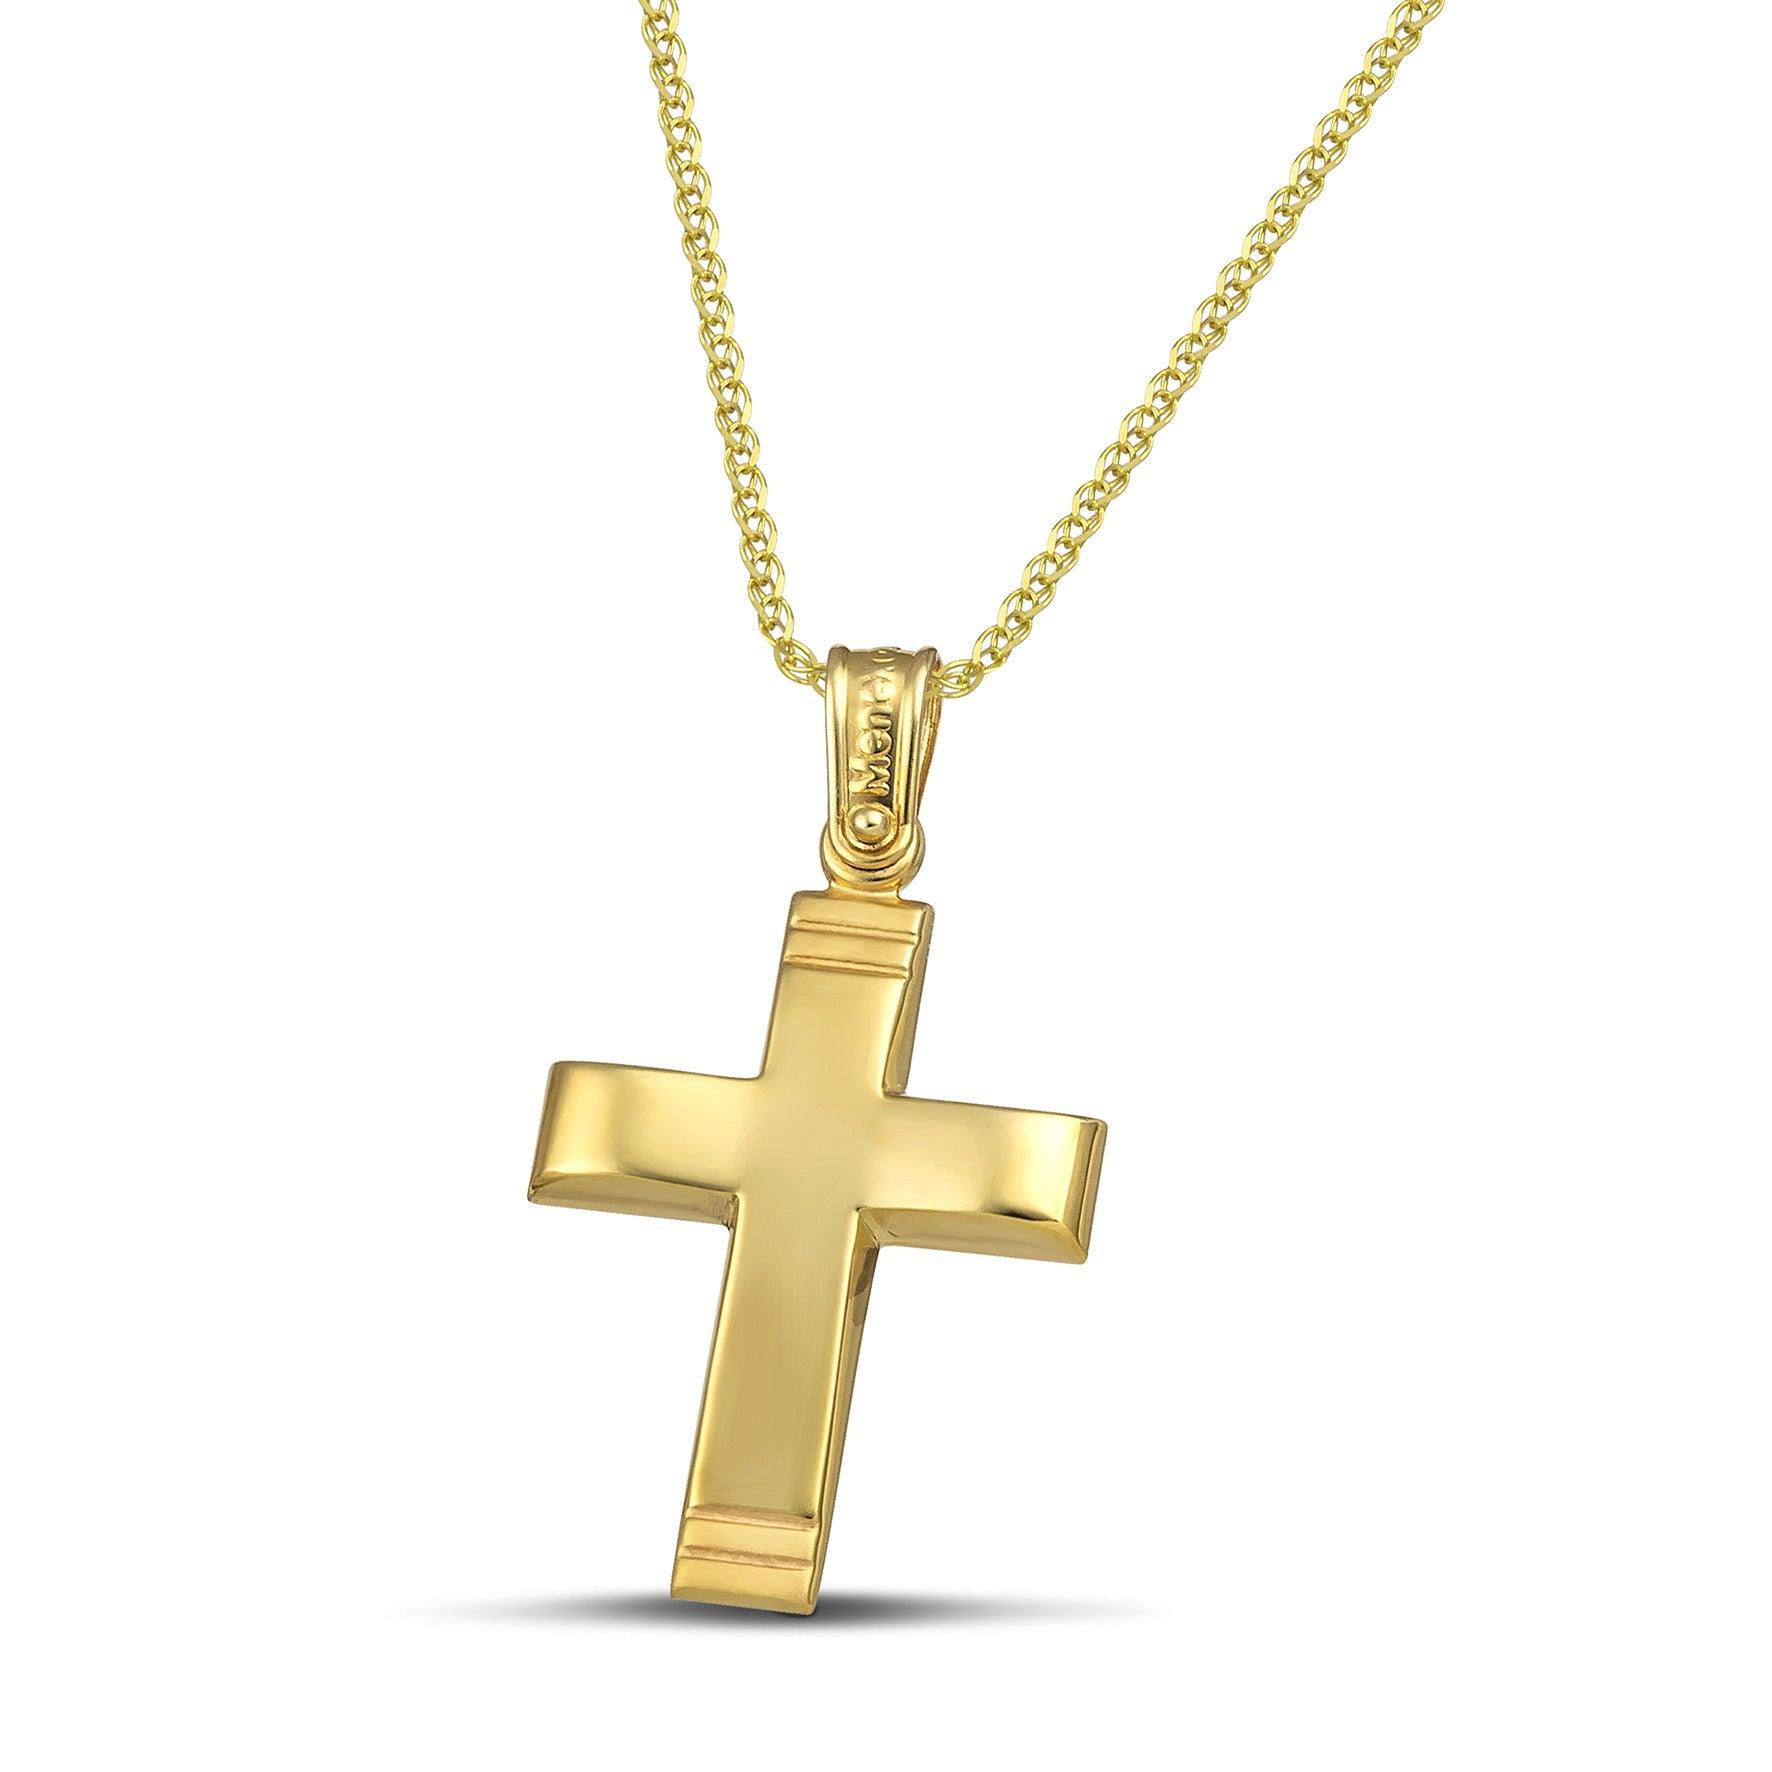 Χρυσός σταυρός 14 καρατίων με γυαλιστερή επιφάνεια. Γυναικείο  χειροποίητο κόσμημα, φορεμένο σε πλεκτή αλυσίδα.